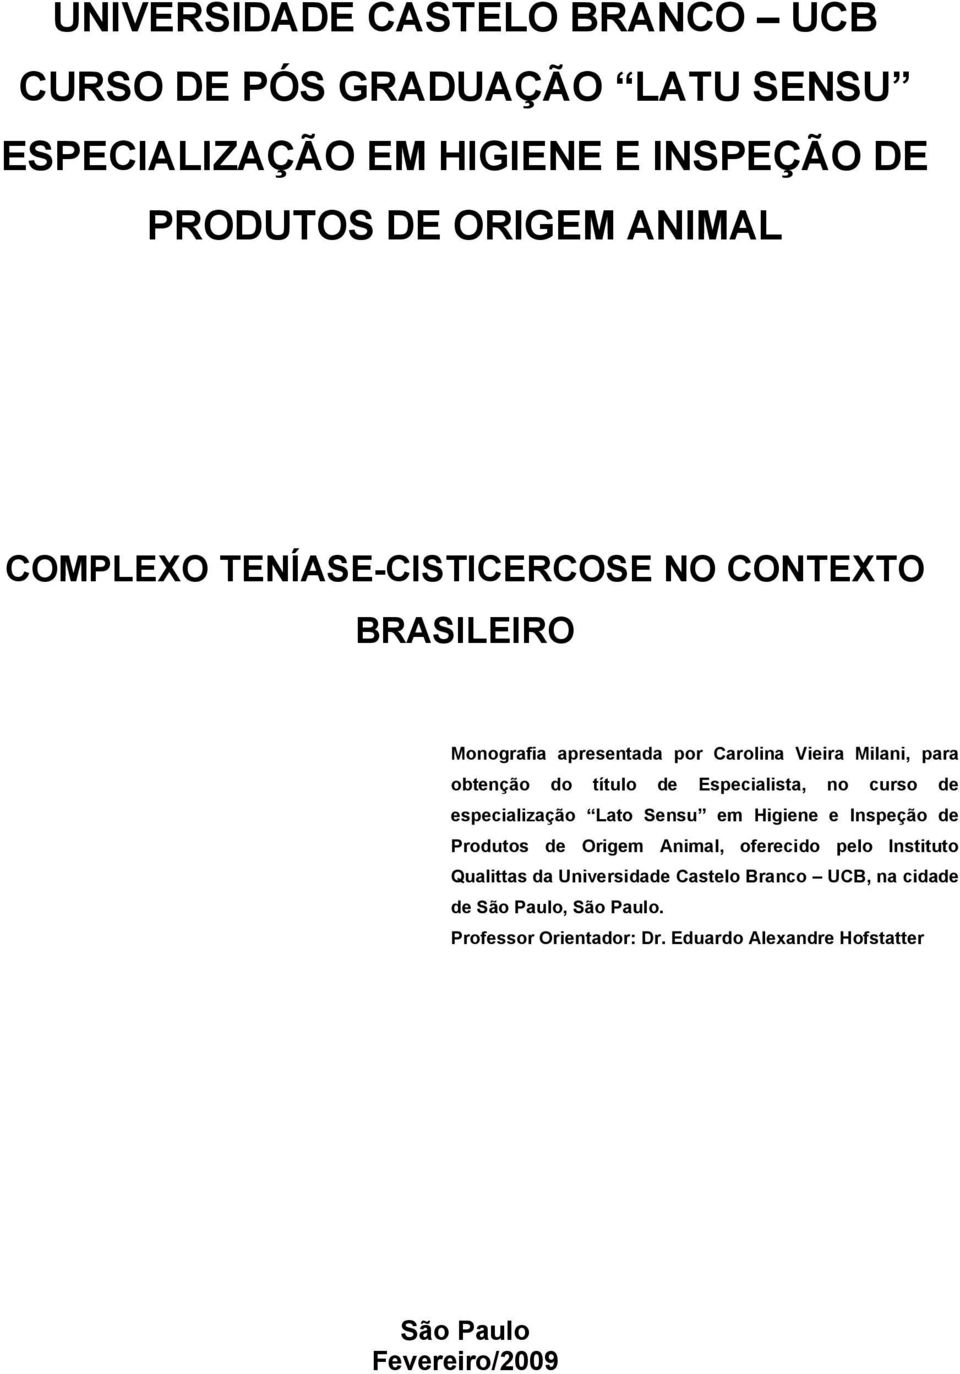 curso de especialização Lato Sensu em Higiene e Inspeção de Produtos de Origem Animal, oferecido pelo Instituto Qualittas da Universidade